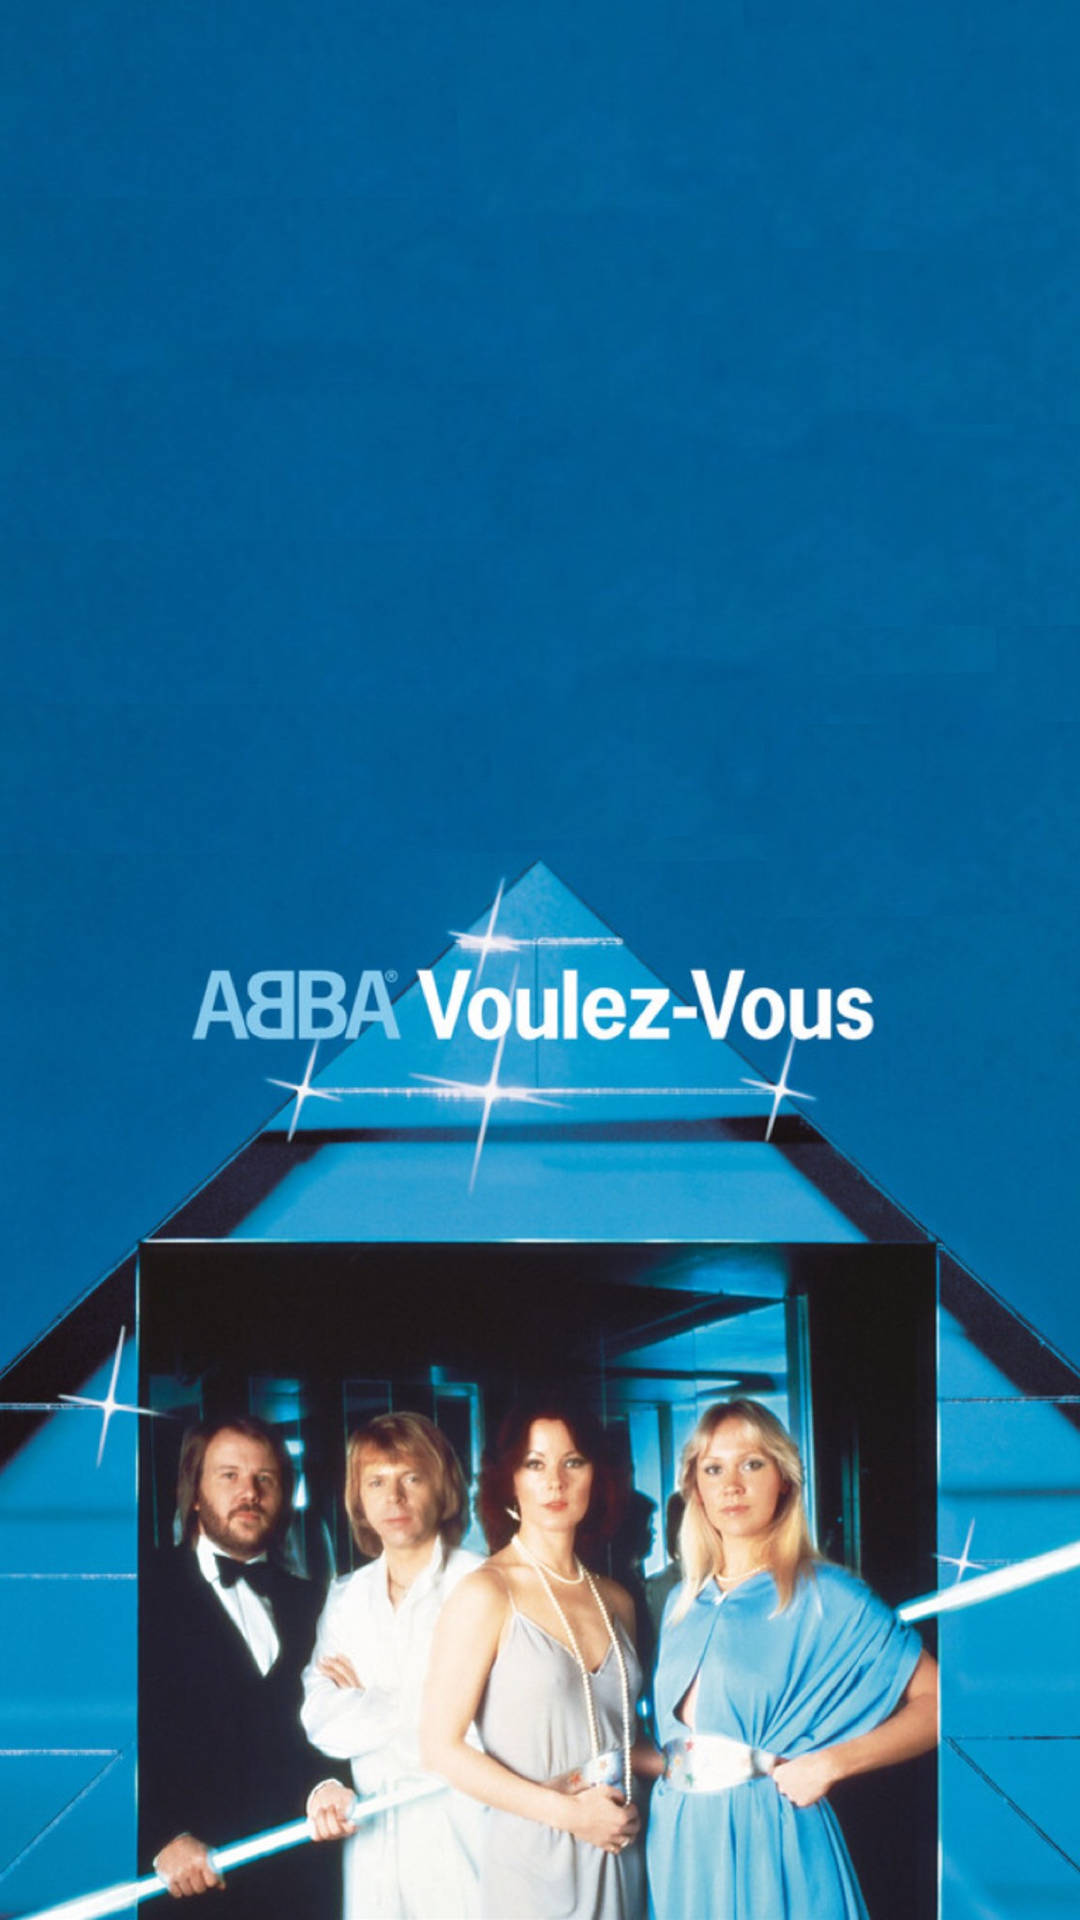 Abba Voulez-vous Album